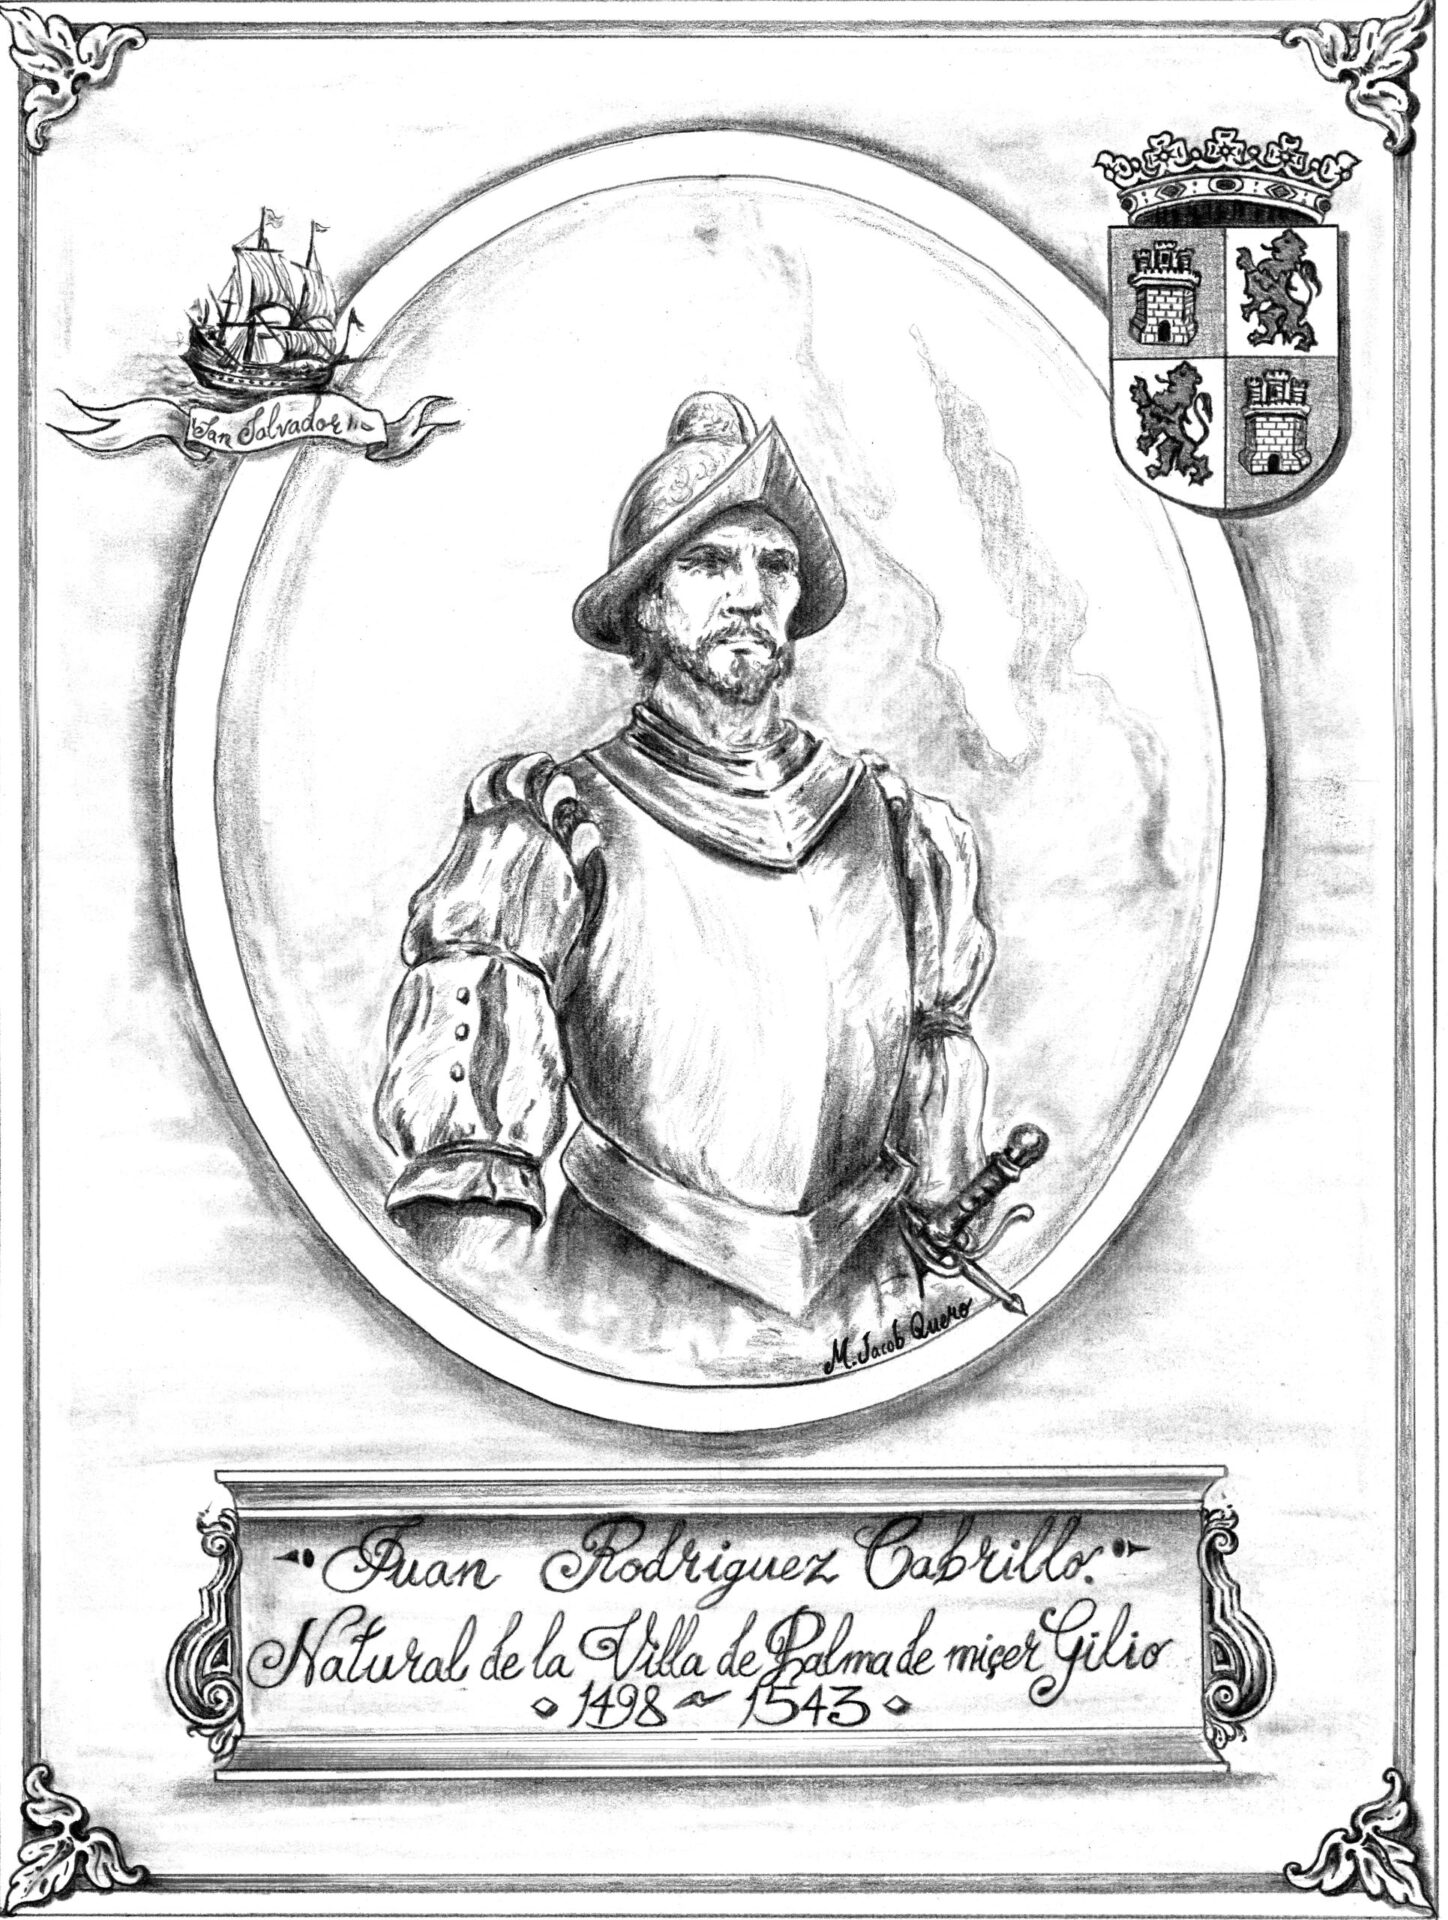 Juan Rodríguez Cabrillo (1498-1543)